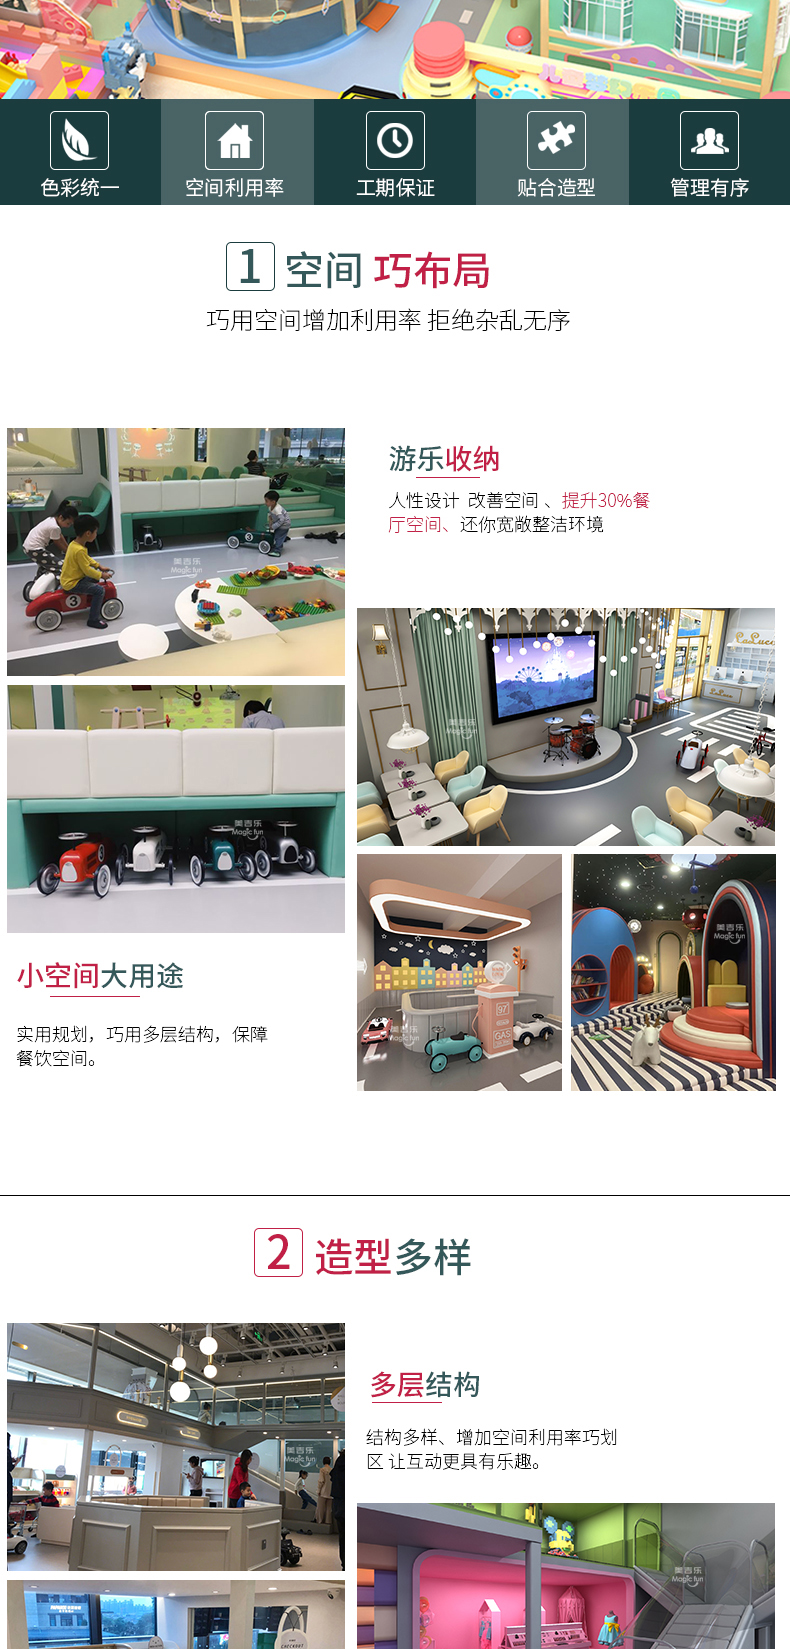 武汉游乐场室内设备 淘气堡儿童乐园 大型亲子餐厅 11